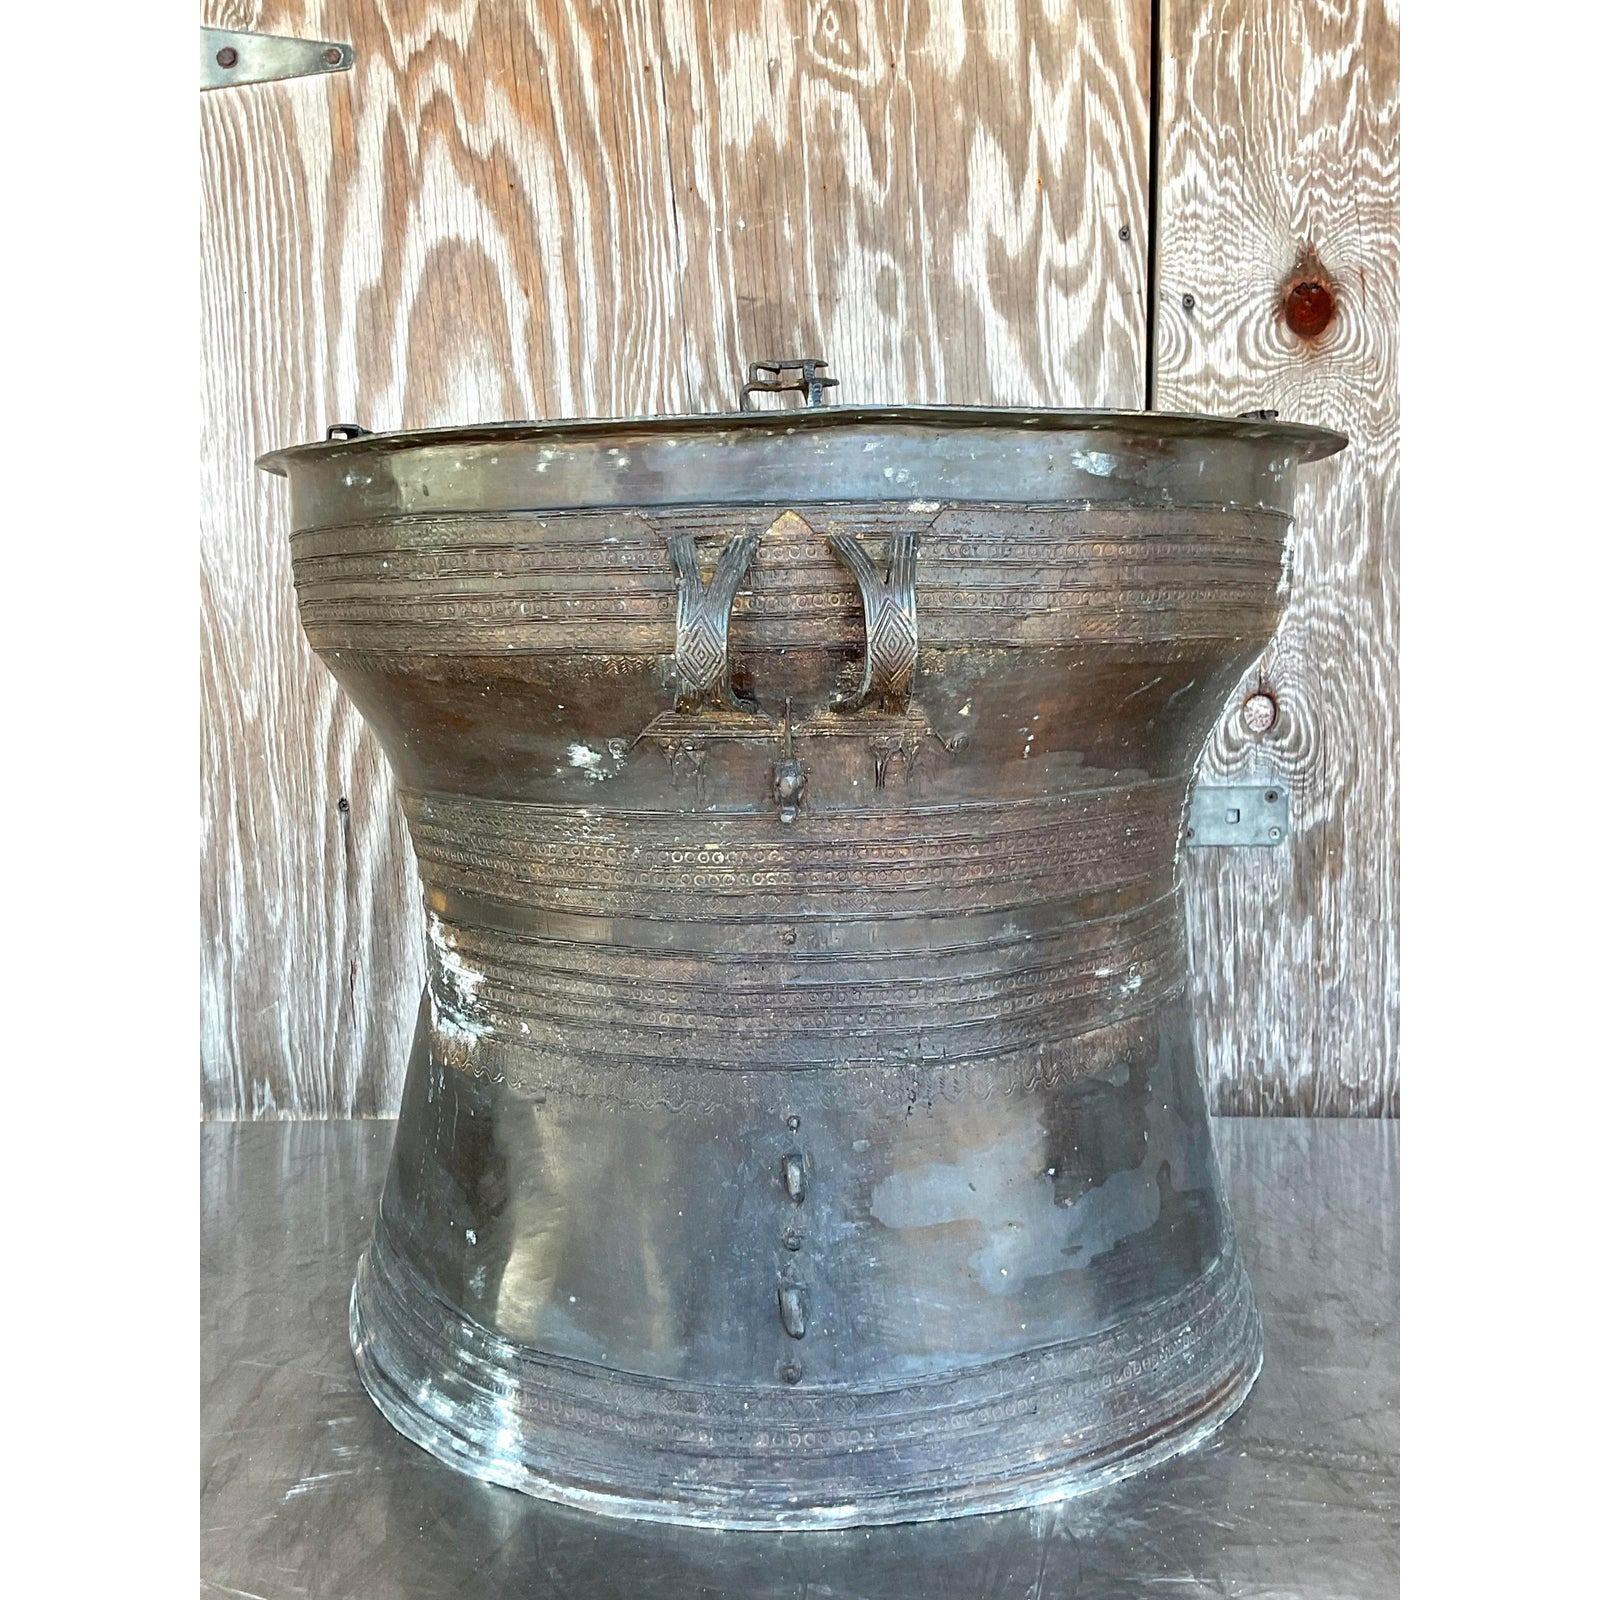 Un superbe tambour de pluie Boho vintage, un cadre chic en bronze patiné avec un travail de métal très détaillé. Une incroyable finition patinée par le temps et l'âge. Acquis d'une propriété de Palm Beach.

Le tambour d'arrosage est en très bon